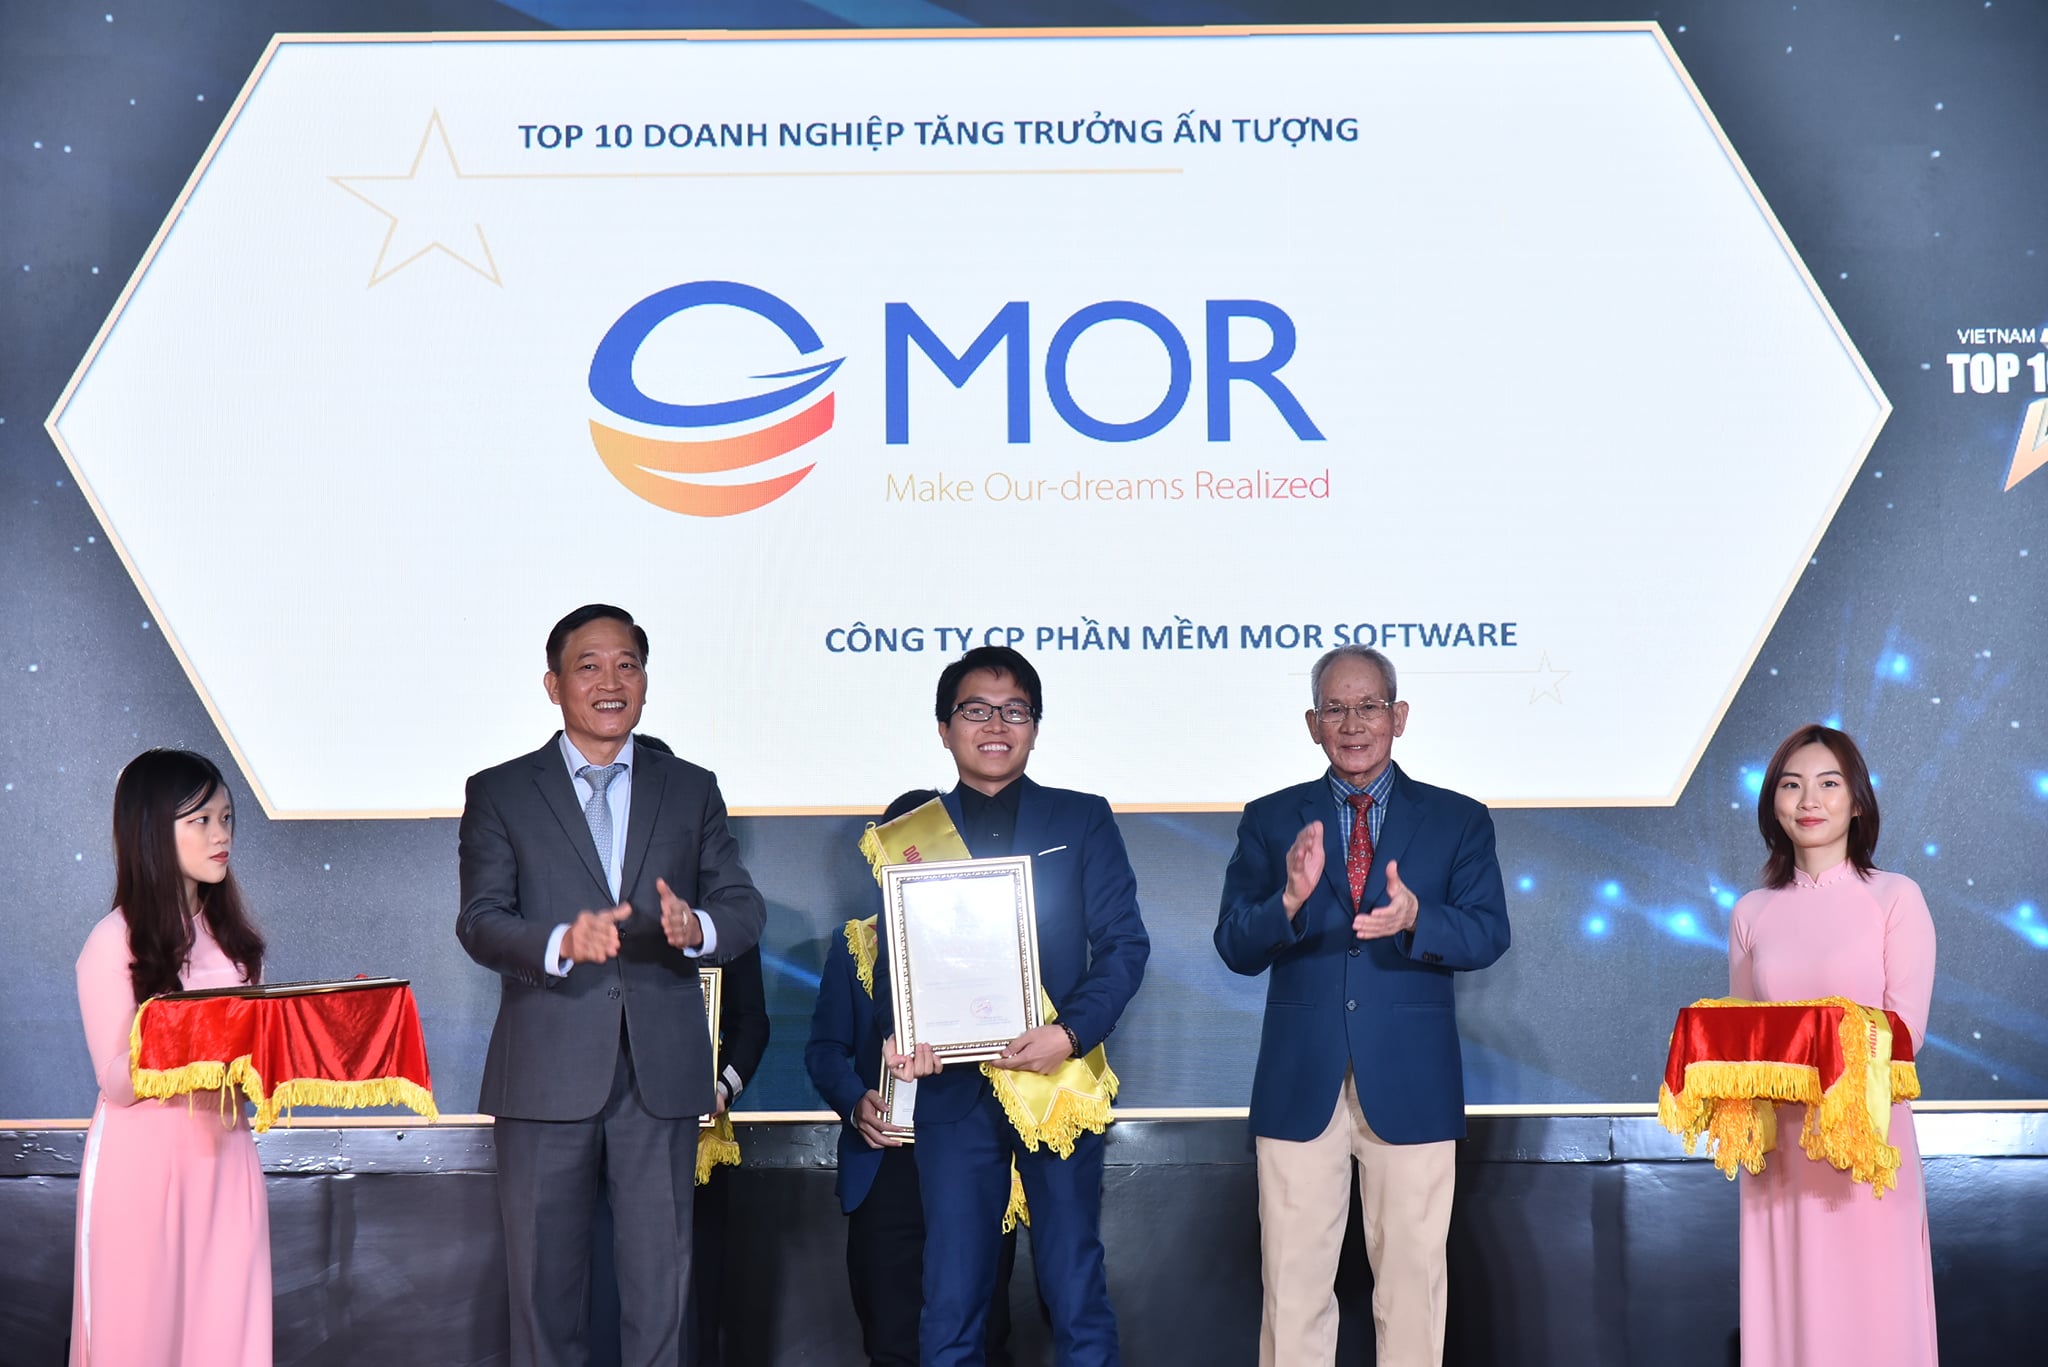 Ông Vũ Văn Tú - CEO MOR Software nhận bằng khen TOP 10 Doanh nghiệp CNTT - hạng mục Tăng trưởng ấn tượng